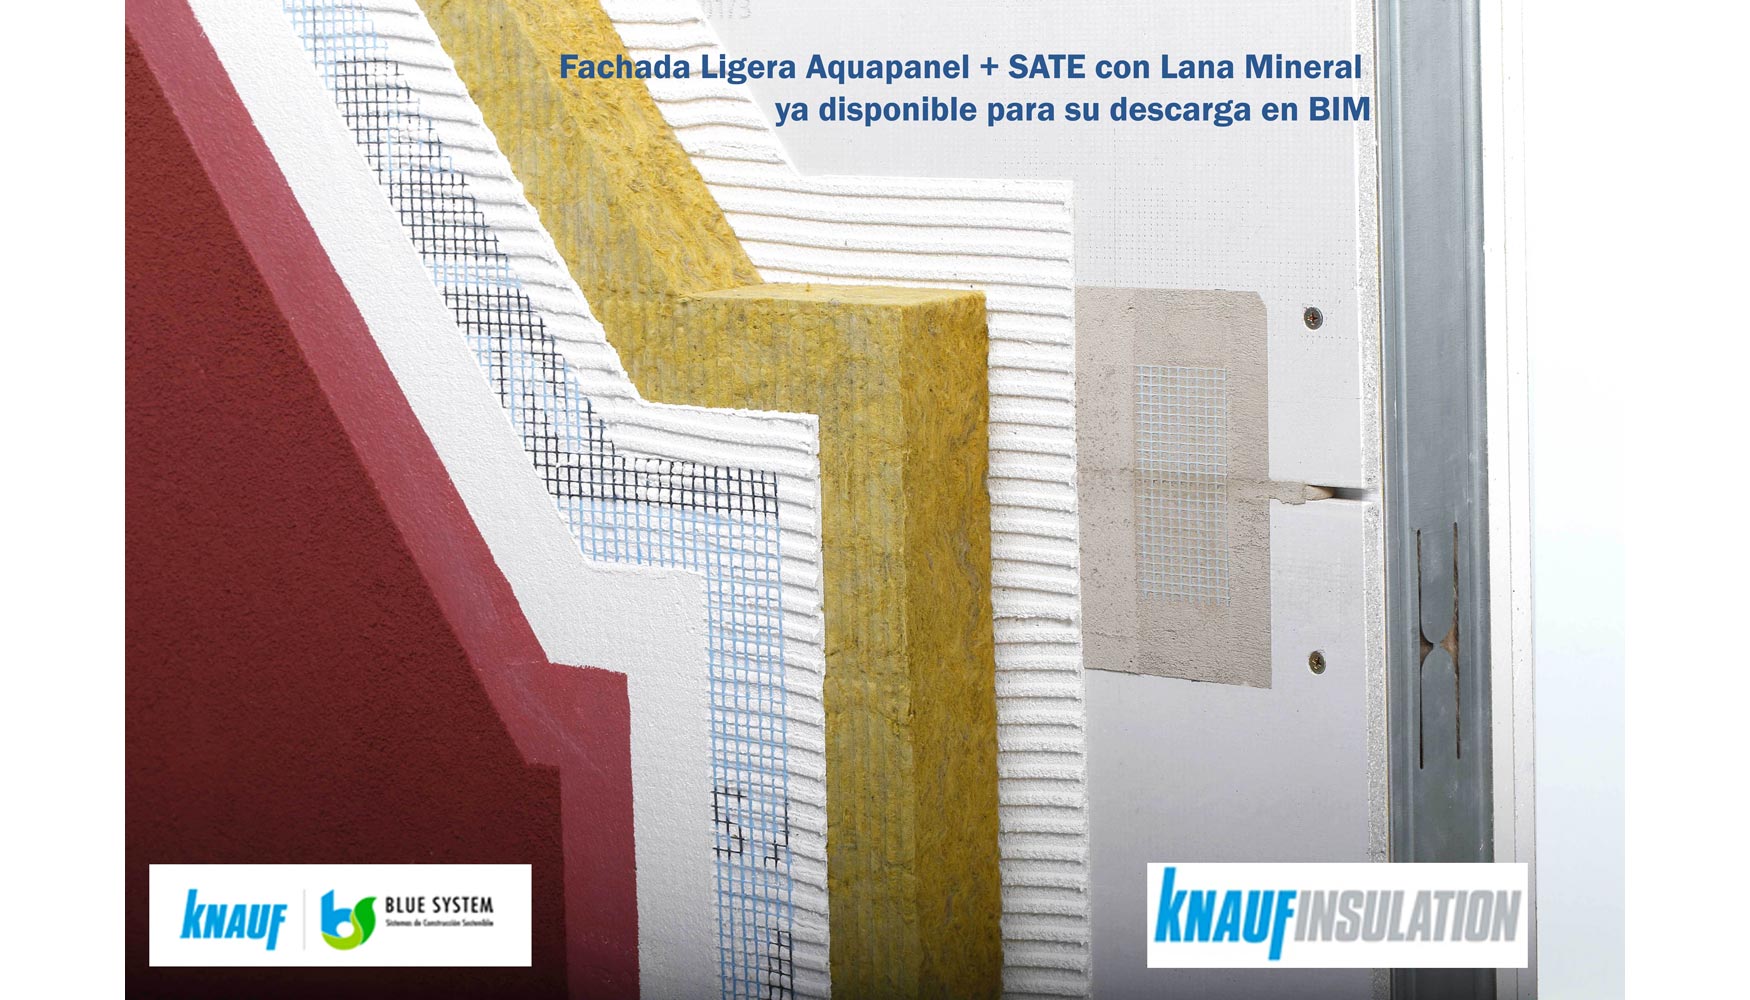 El Grupo Knauf aade a su catlogo BIM el sistema de Fachada Ligera Aquapanel + SATE con Lana Mineral